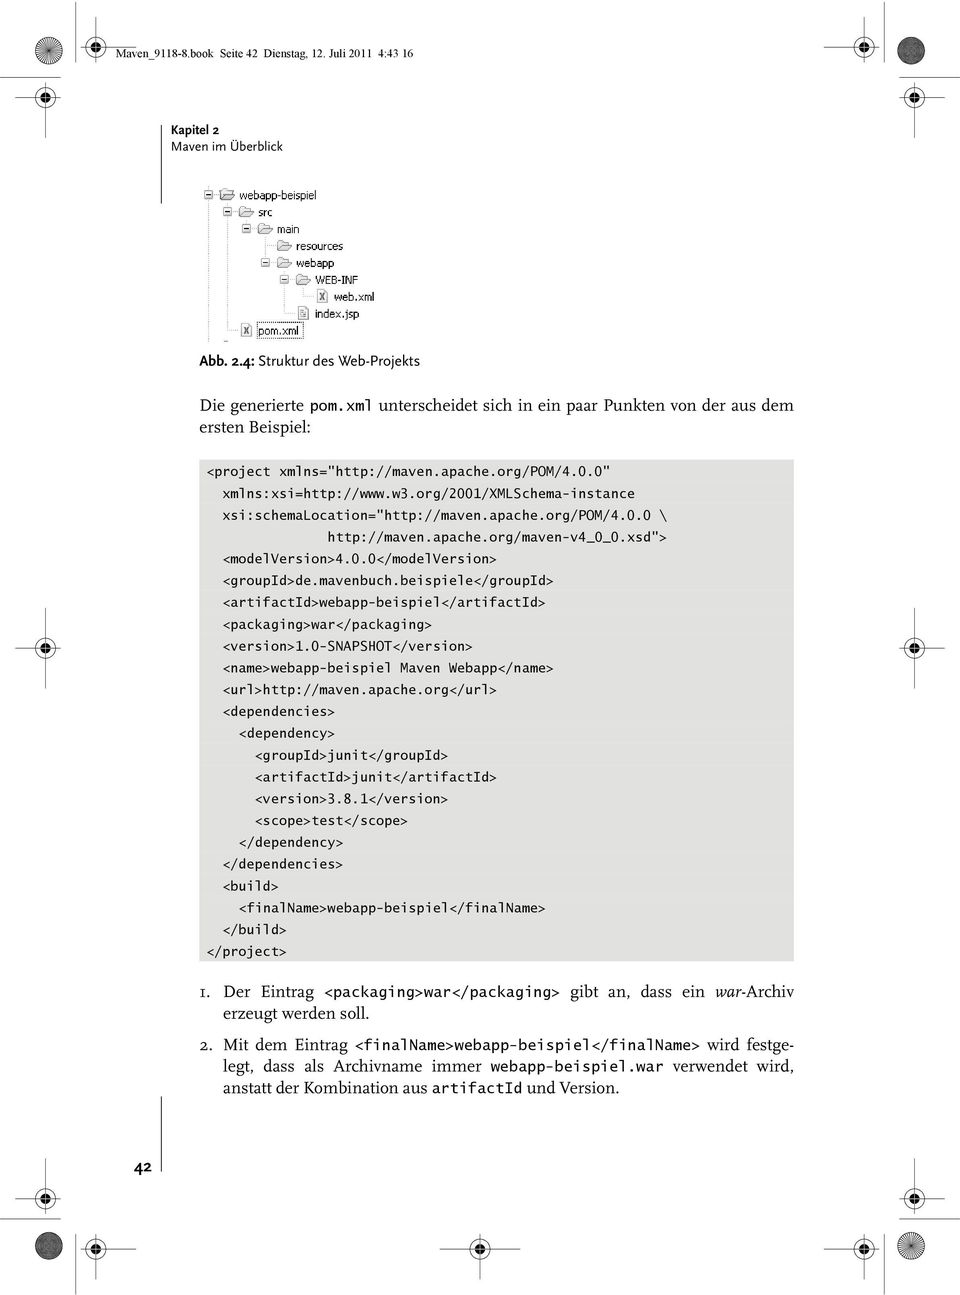 org/2001/xmlschema-instance xsi:schemalocation="http://maven.apache.org/pom/4.0.0 \ http://maven.apache.org/maven-v4_0_0.xsd"> <modelversion>4.0.0</modelversion> <groupid>de.mavenbuch.